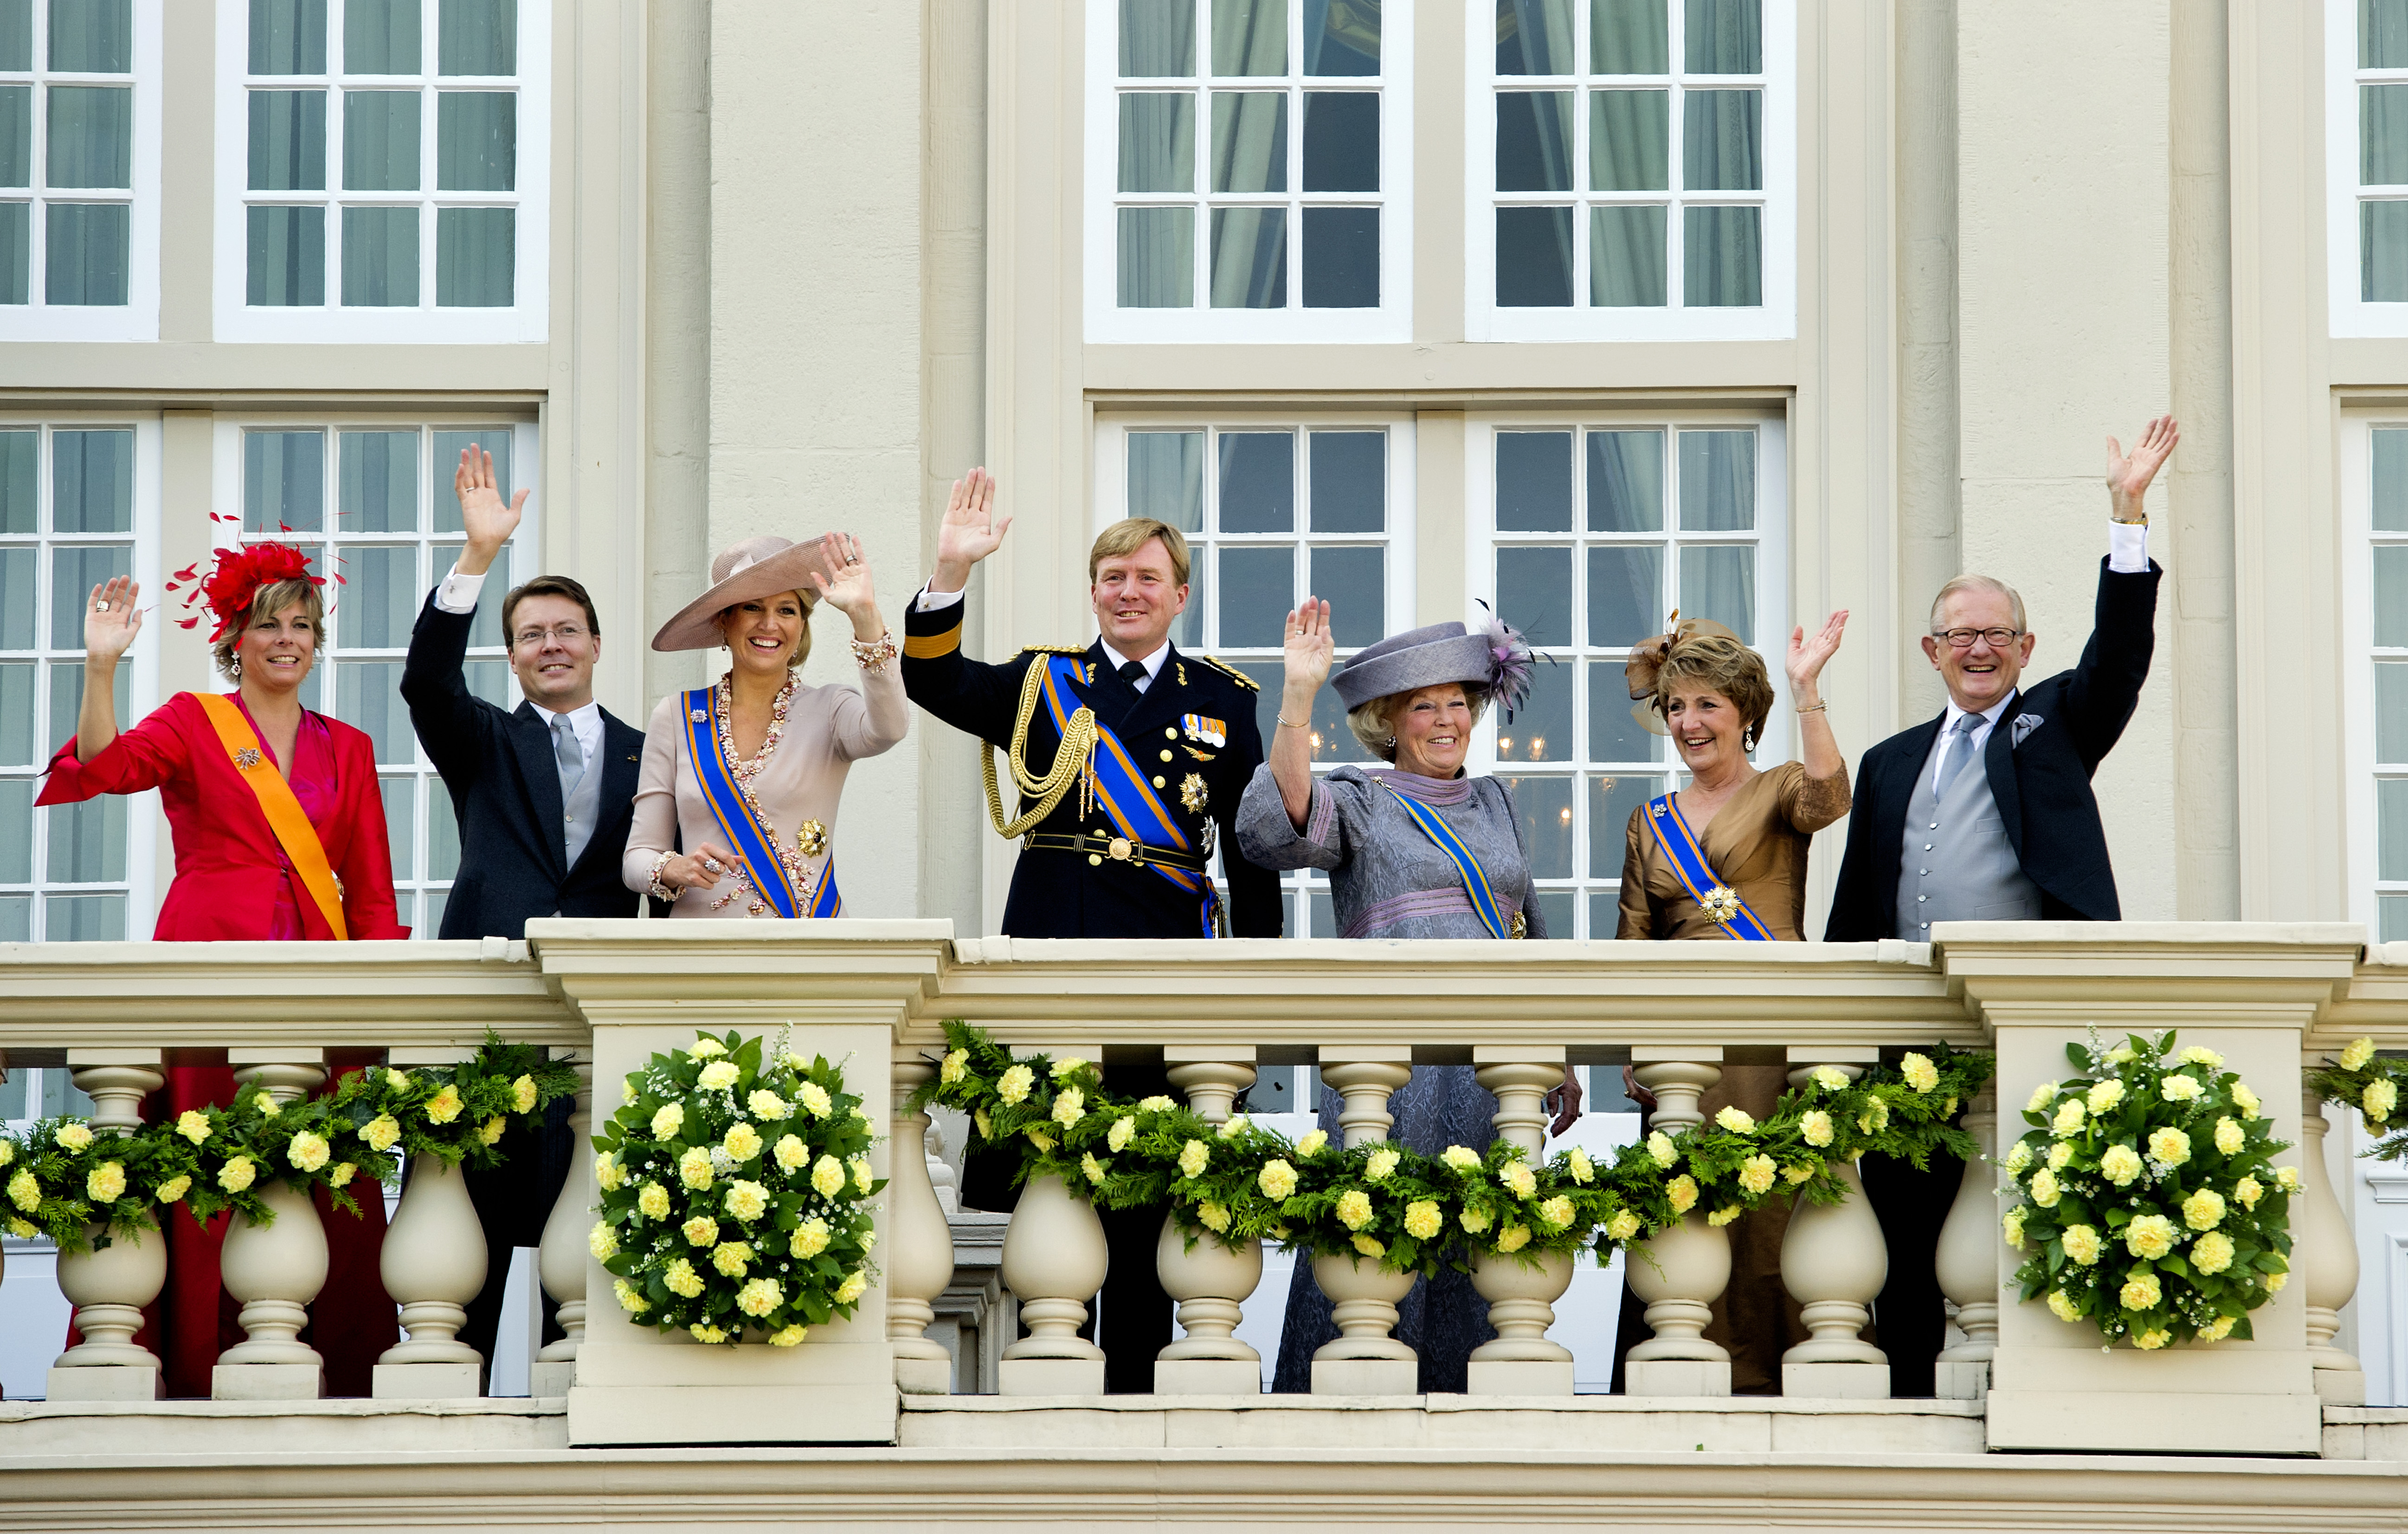 2010-09-21 00:00:00 DEN HAAG - De koninklijke familie zwaait op Prinsjesdag naar het publiek vanaf het balkon van paleis Noordeinde in Den Haag. ANP ROYAL IMAGES KOEN VAN WEEL